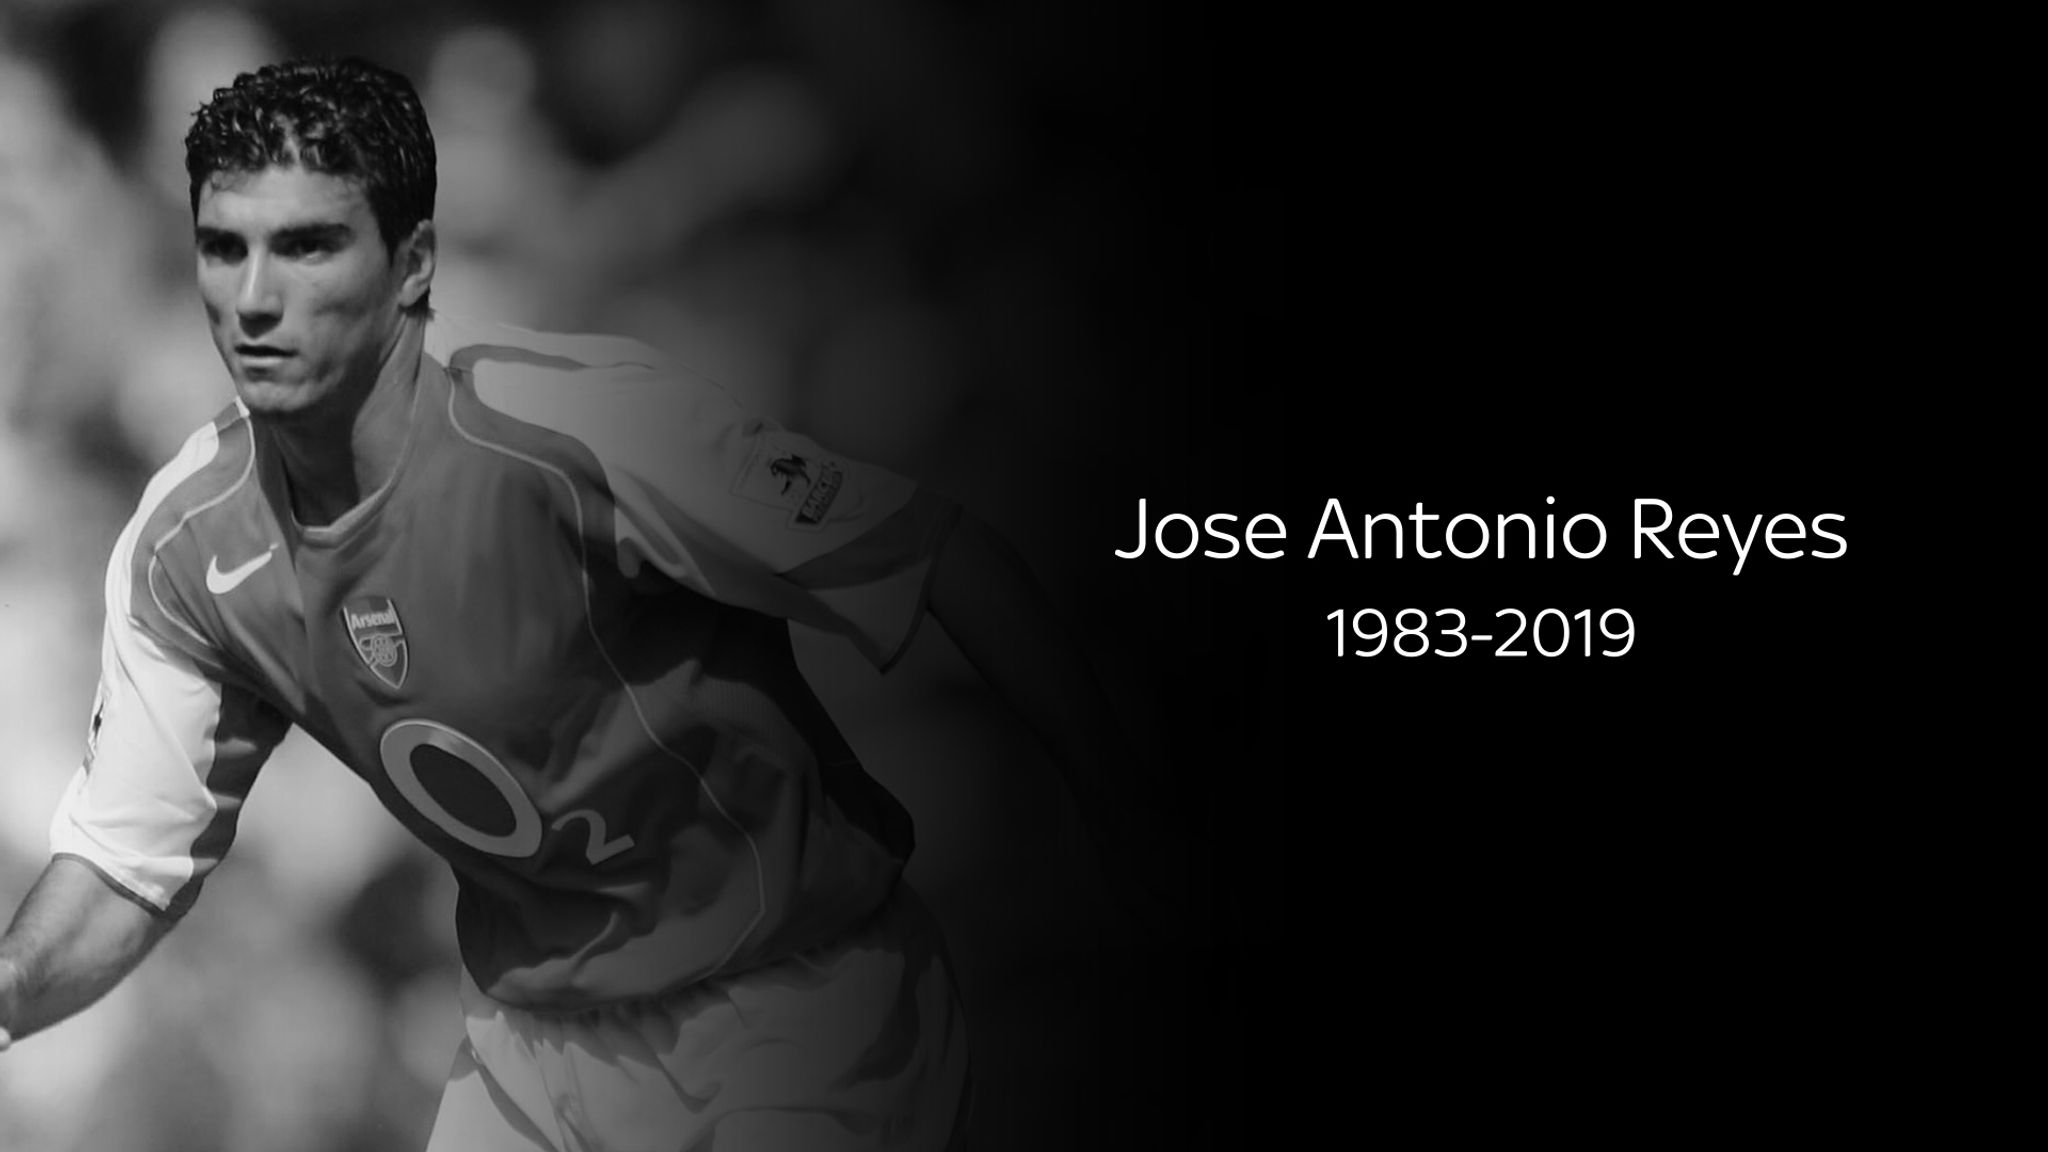 RIP Jose Antonio Reyes: 1 year on